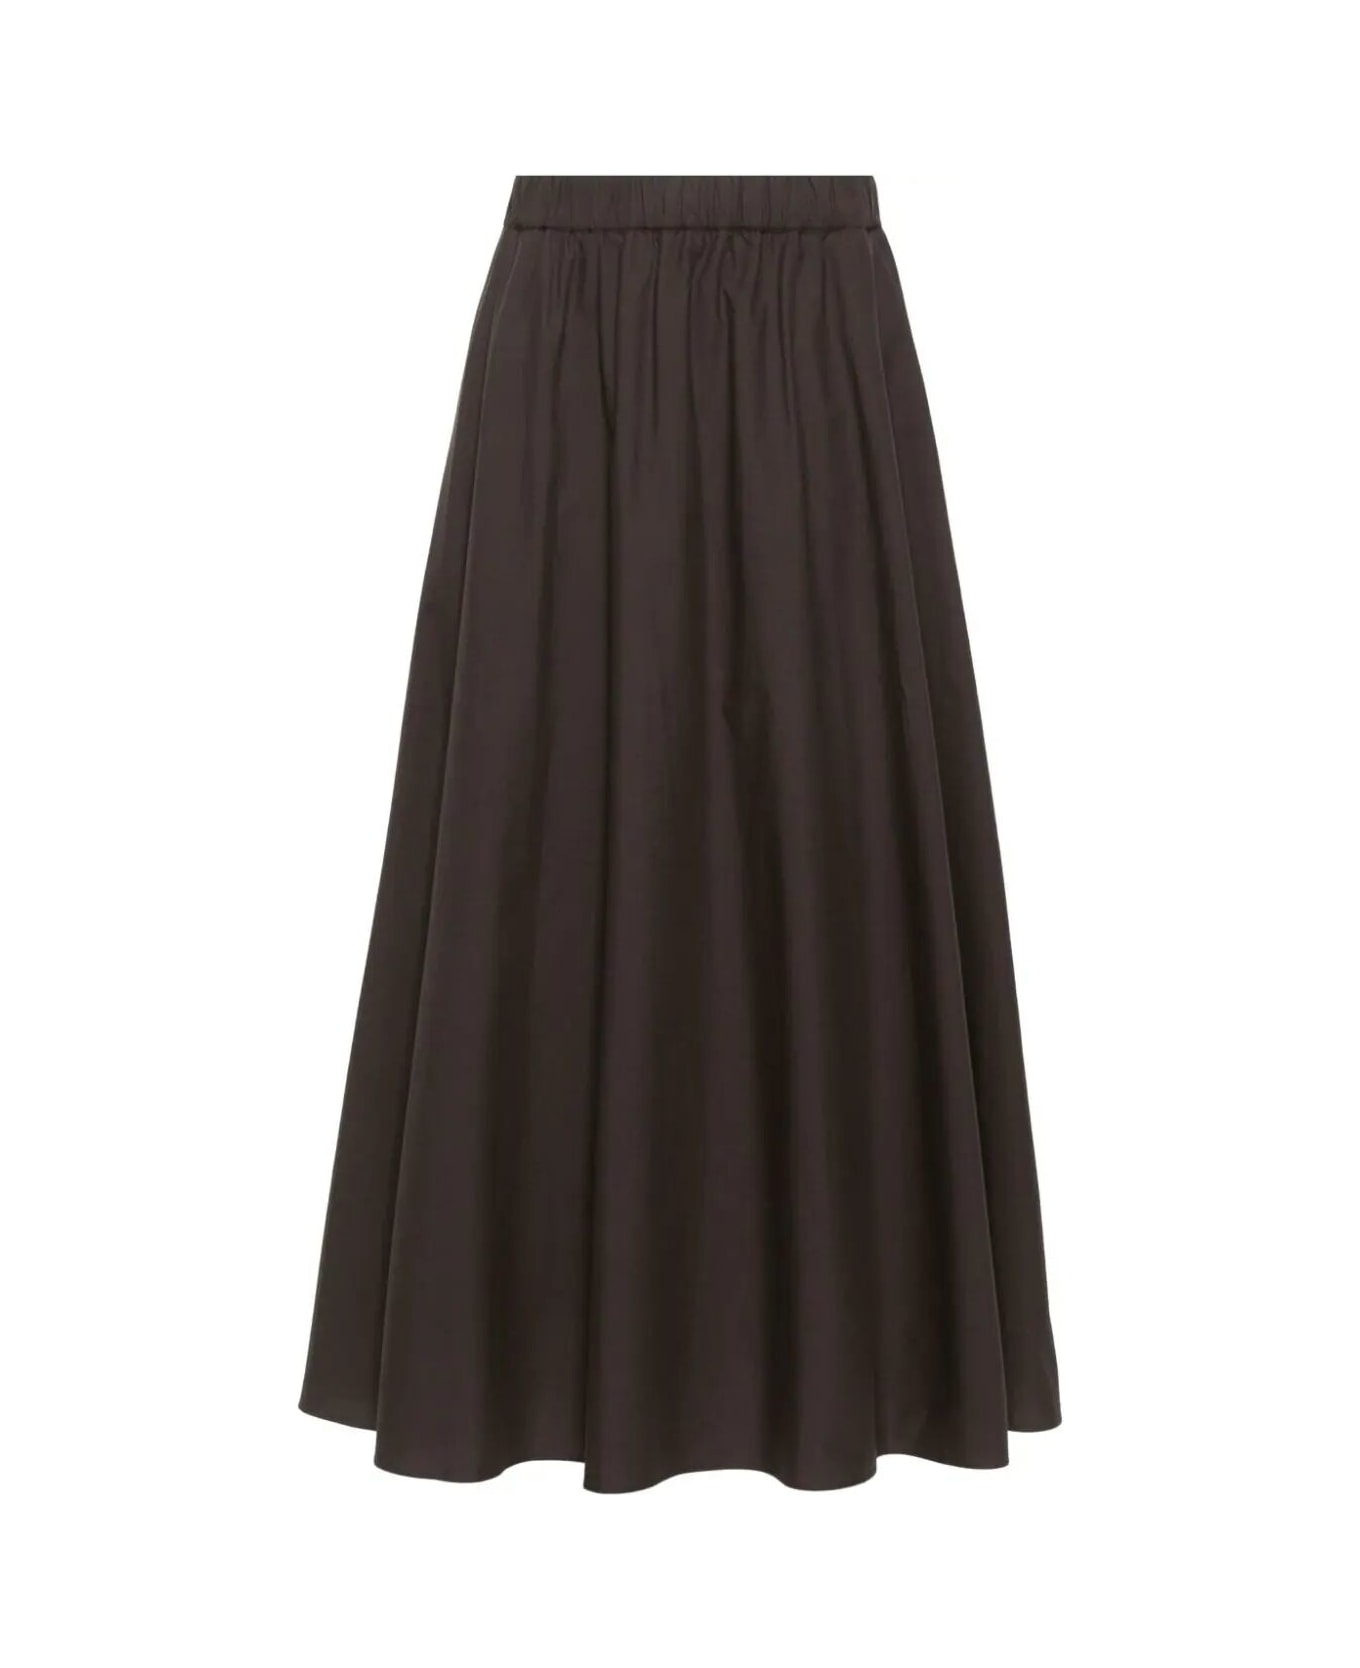 Parosh Long Skirt With Elastic Band - Dark Brown